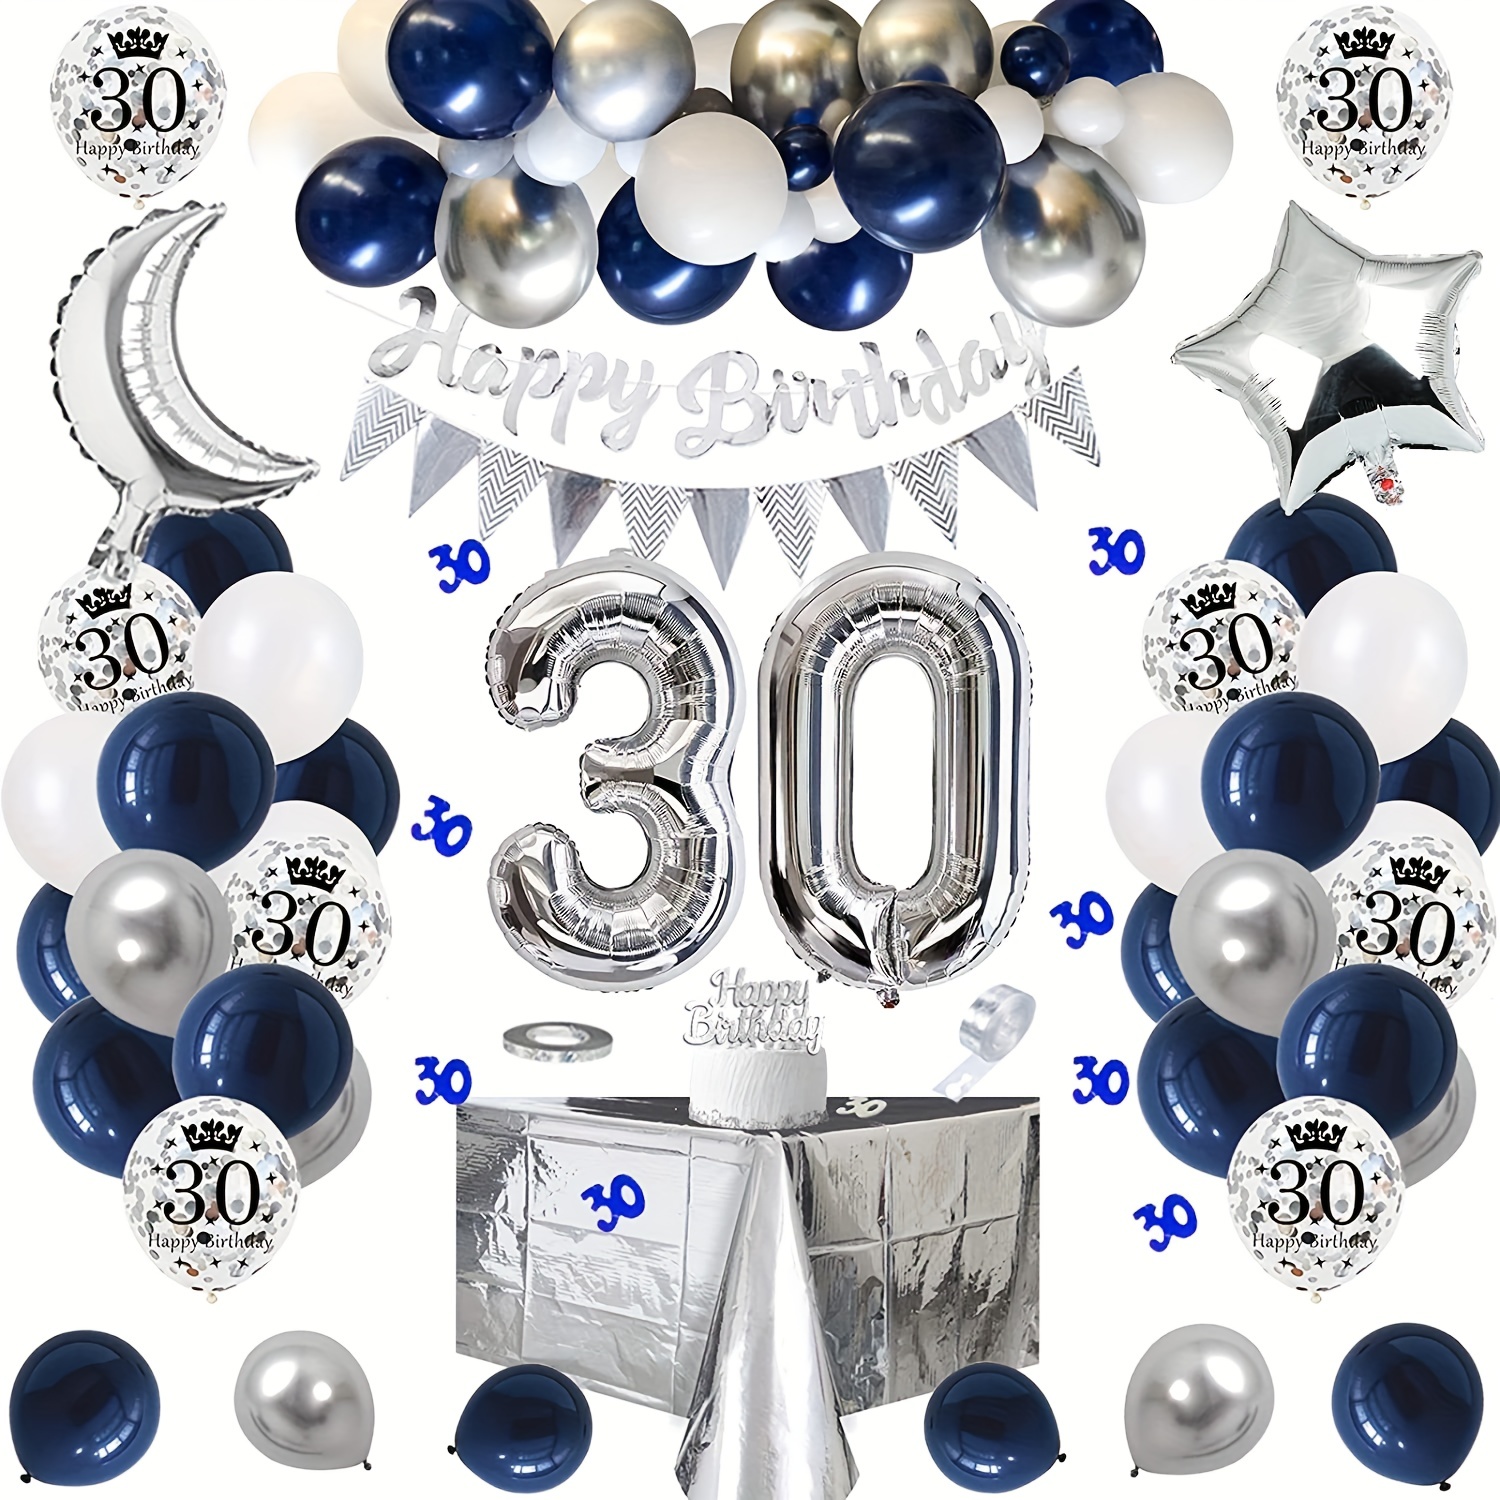  Decoraciones de cumpleaños número 18 para niños y niñas, color  azul y plateado, decoraciones de feliz cumpleaños de 18 años, pancarta,  globos de cumpleaños número 18, mantel con flecos y espirales 